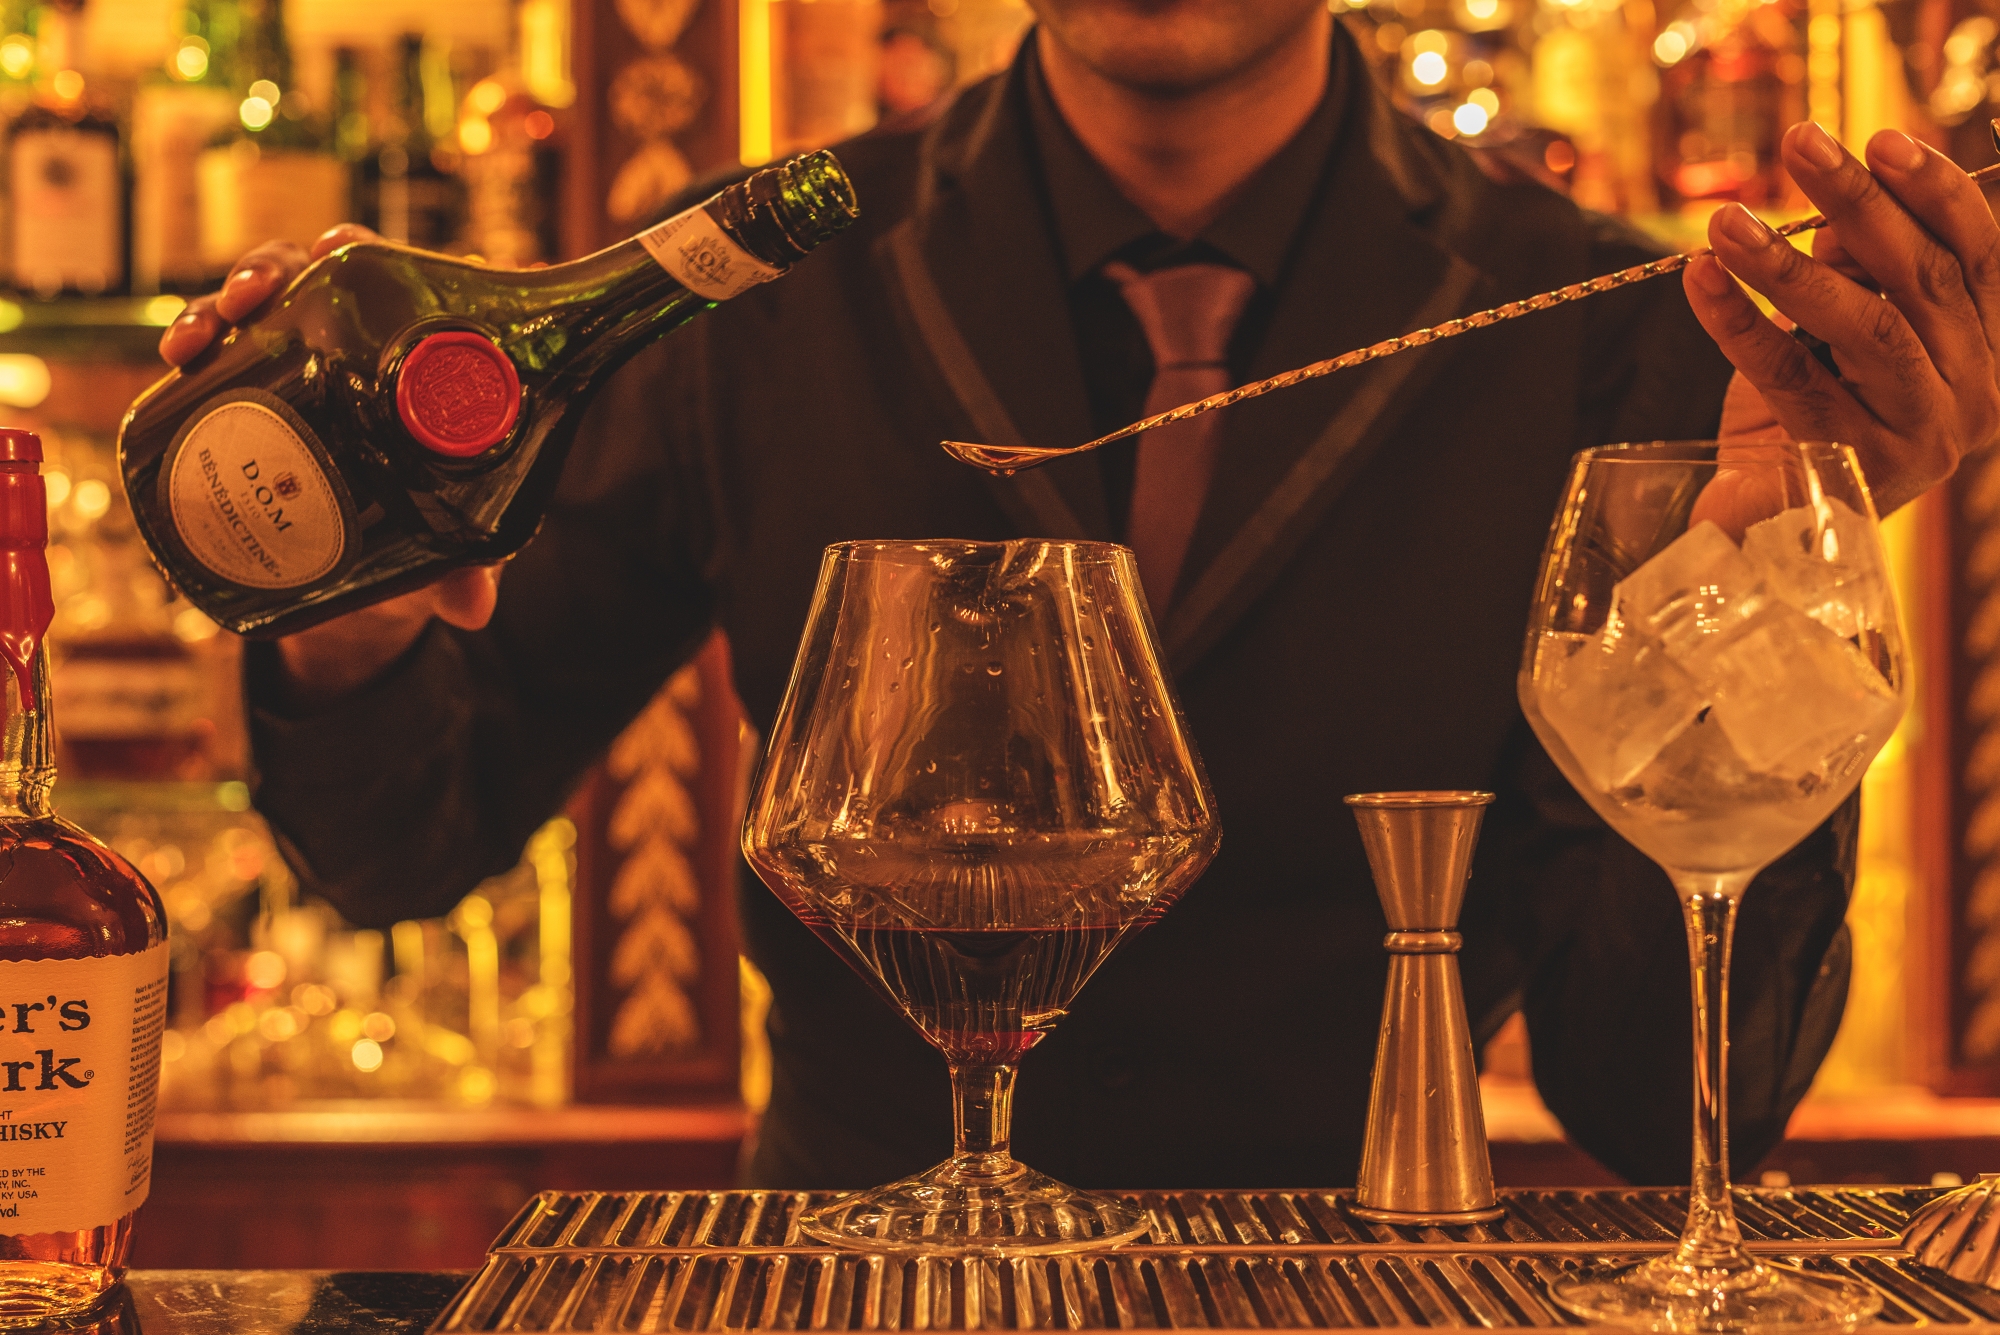 De nouveaux cocktails et un nouveau barman au bar de L'Hôtel - Photo 14